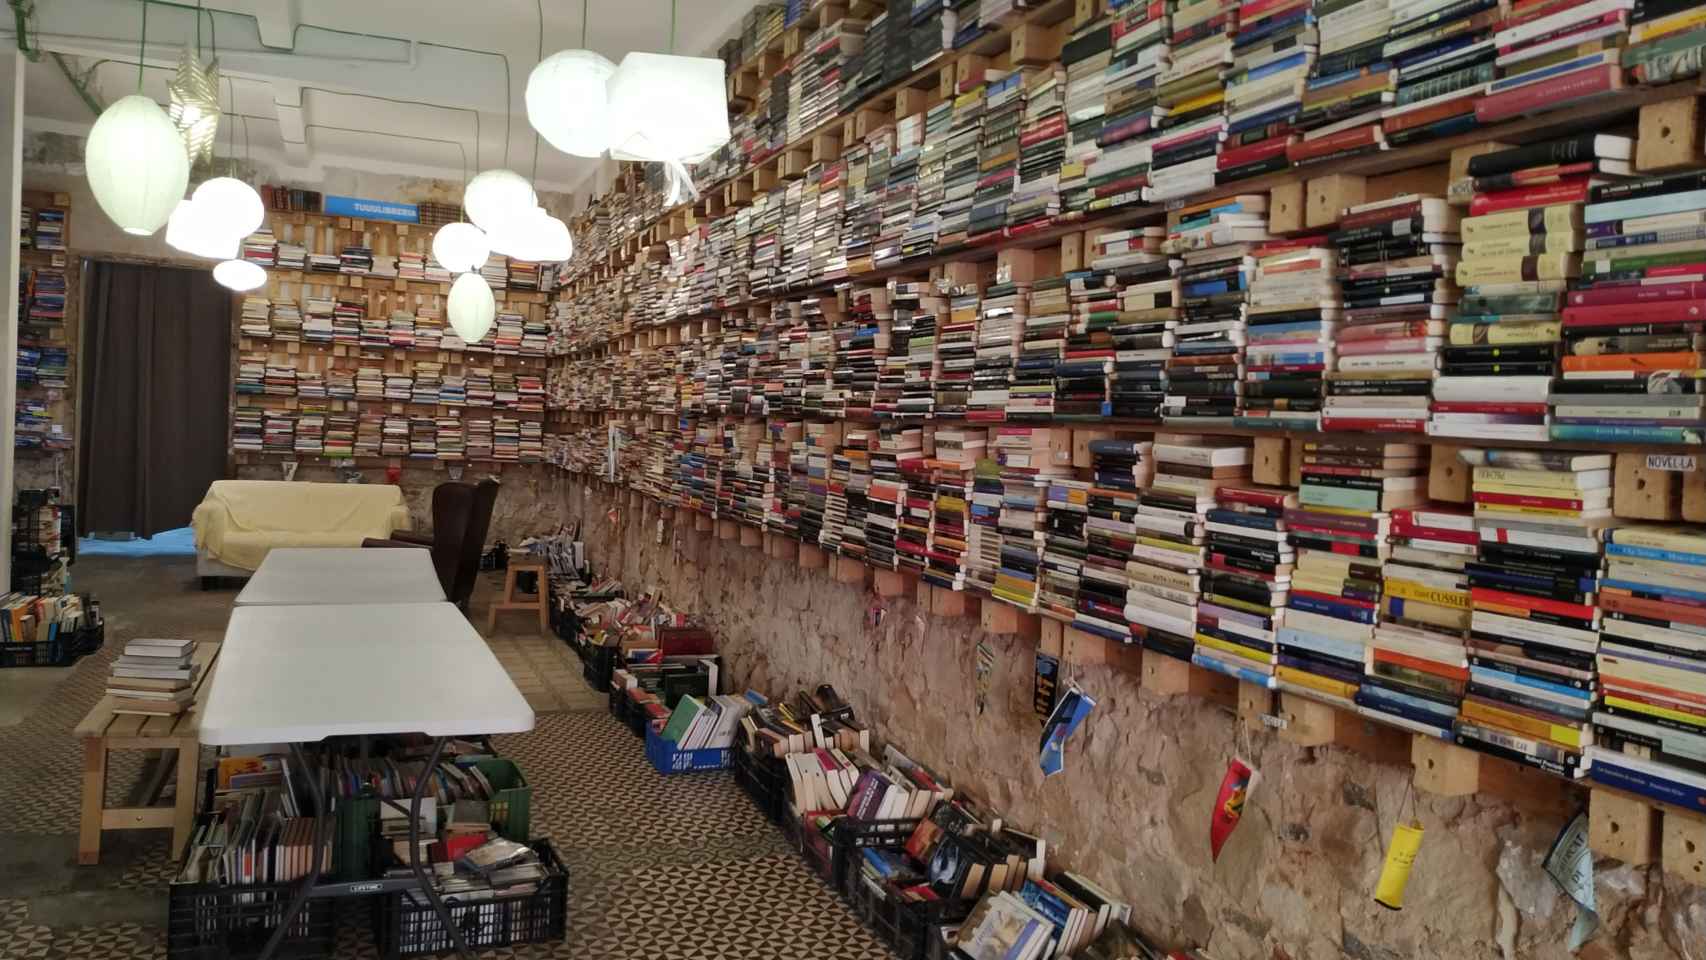 Centenares de libros para elegir (y soñar) en TuuLibrería de Barcelona / P. B.